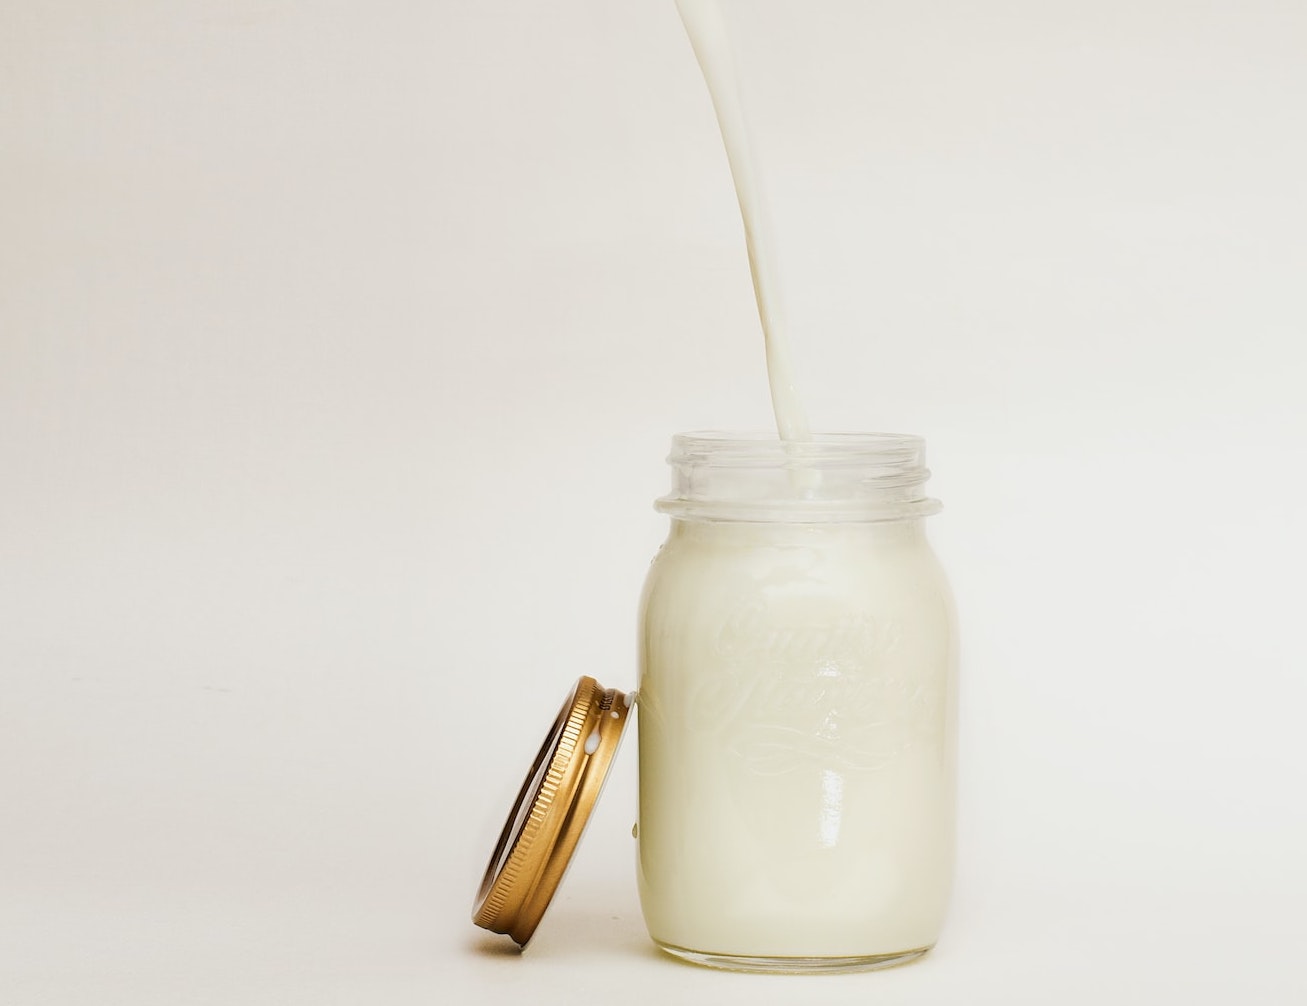 Il packaging influenza il sapore del latte: meglio le bottiglie di plastica e vetro. A dirlo è uno studio del Journal of Dairy Science